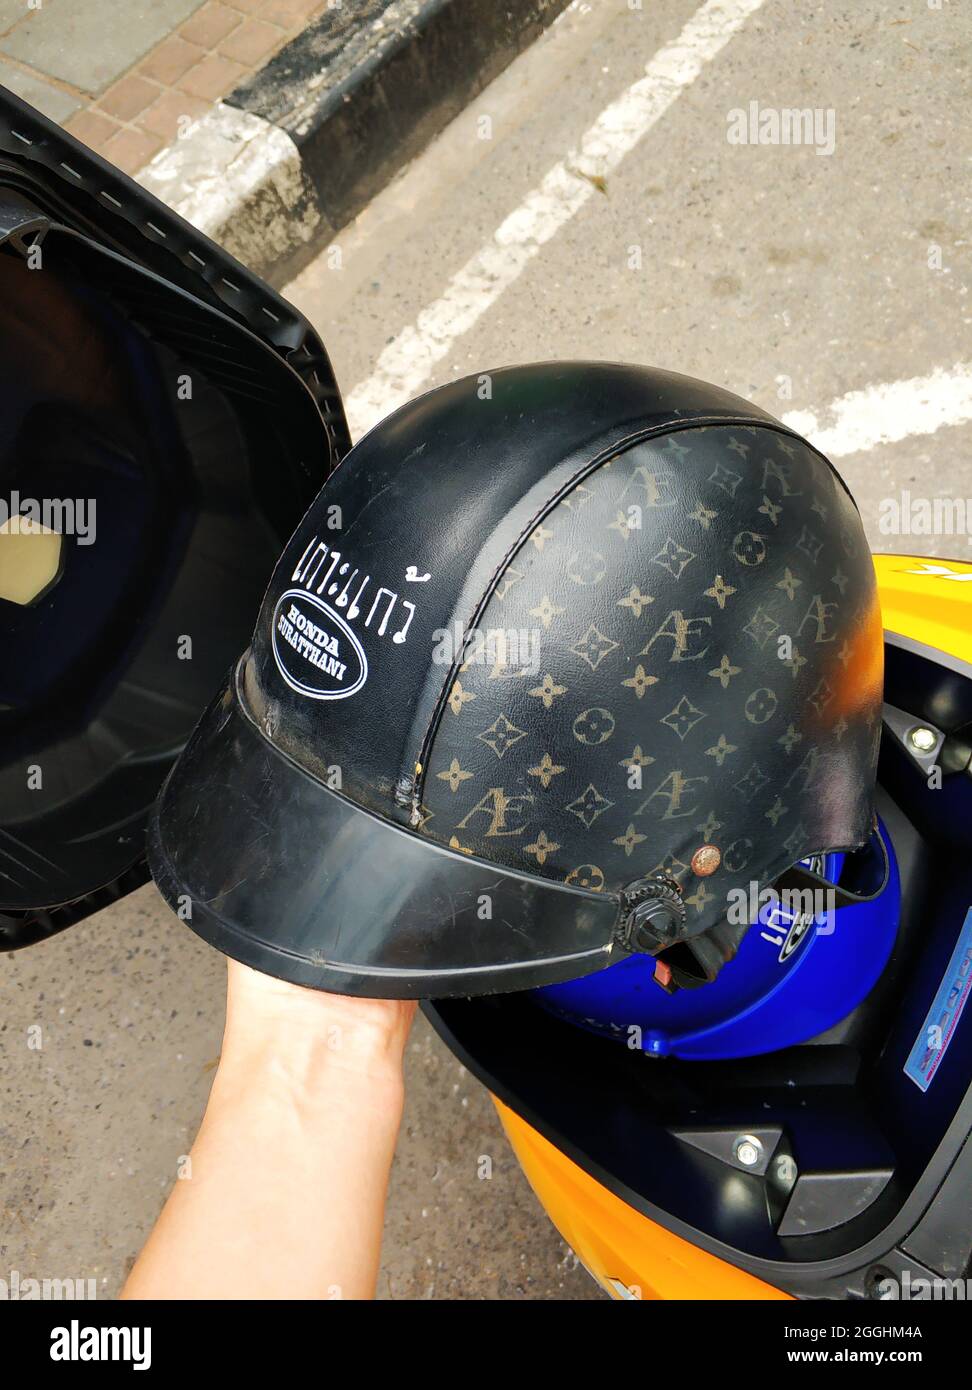 louis vuitton welding helmet